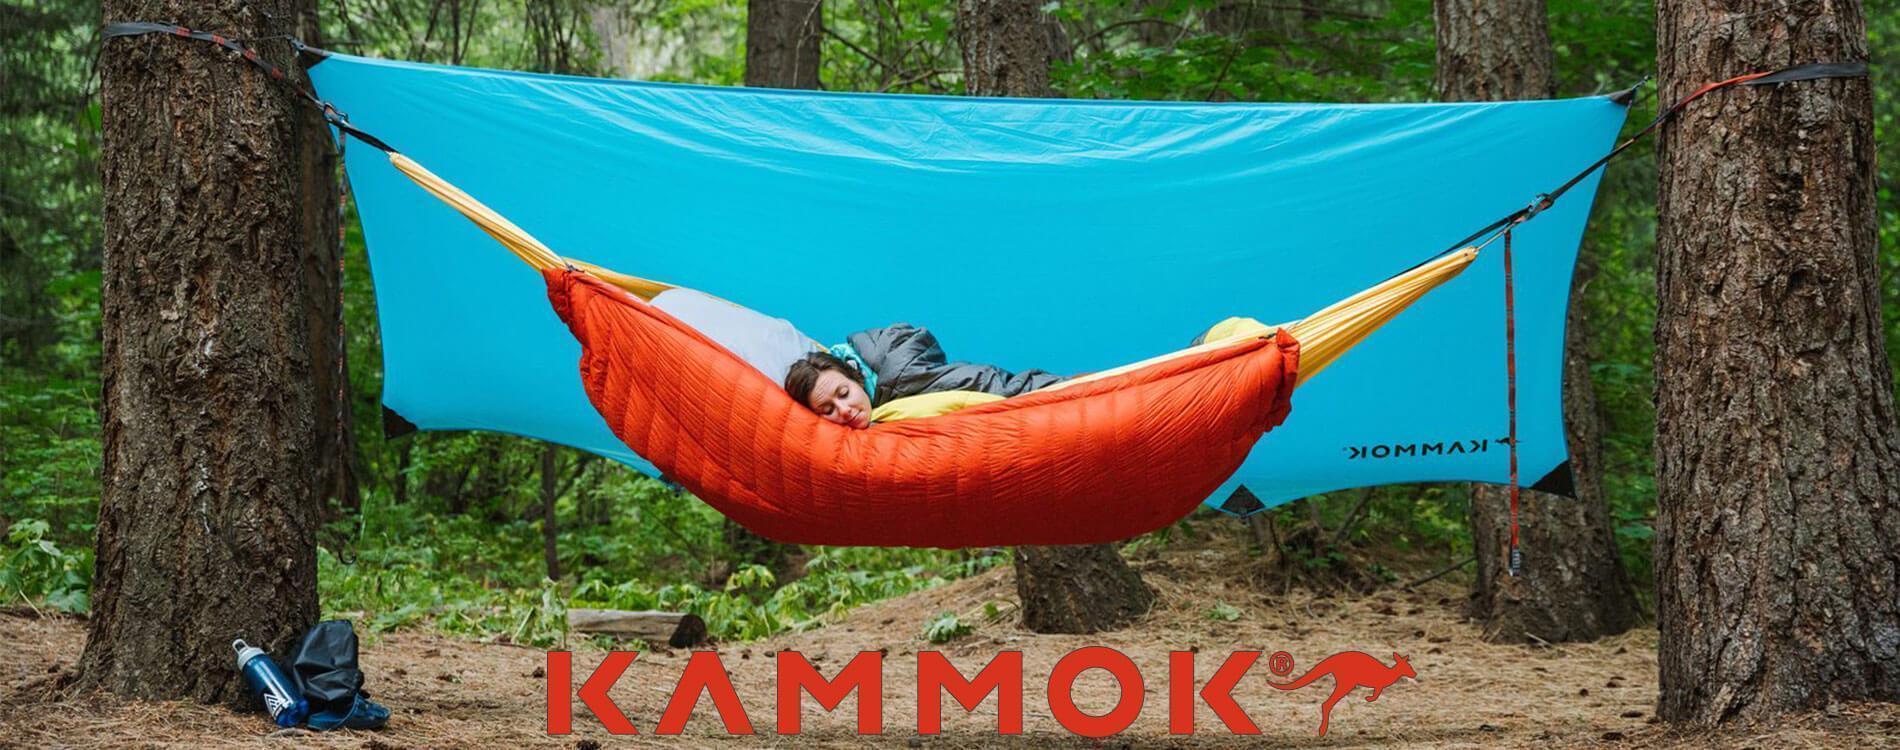 Kammok - Hammocker, campingfiltar, väderskydd och väskor - TacNGear